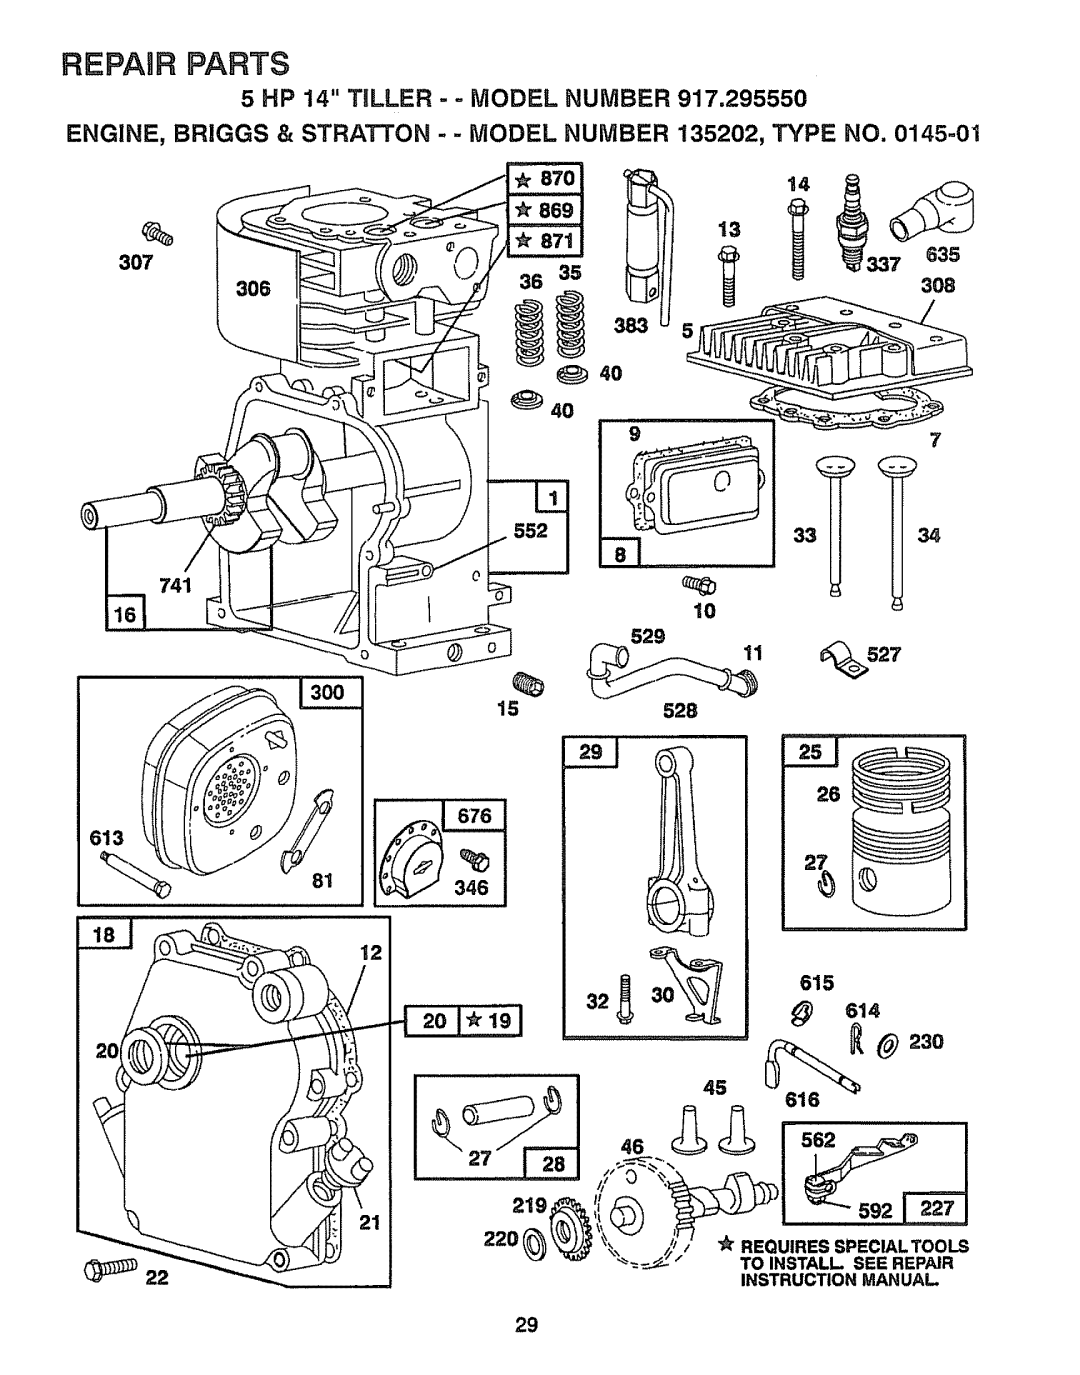 Craftsman 917.29555 manual 13oo, Repair Parts, 5 HP 14 TILLER - - MODEL NUMBER 